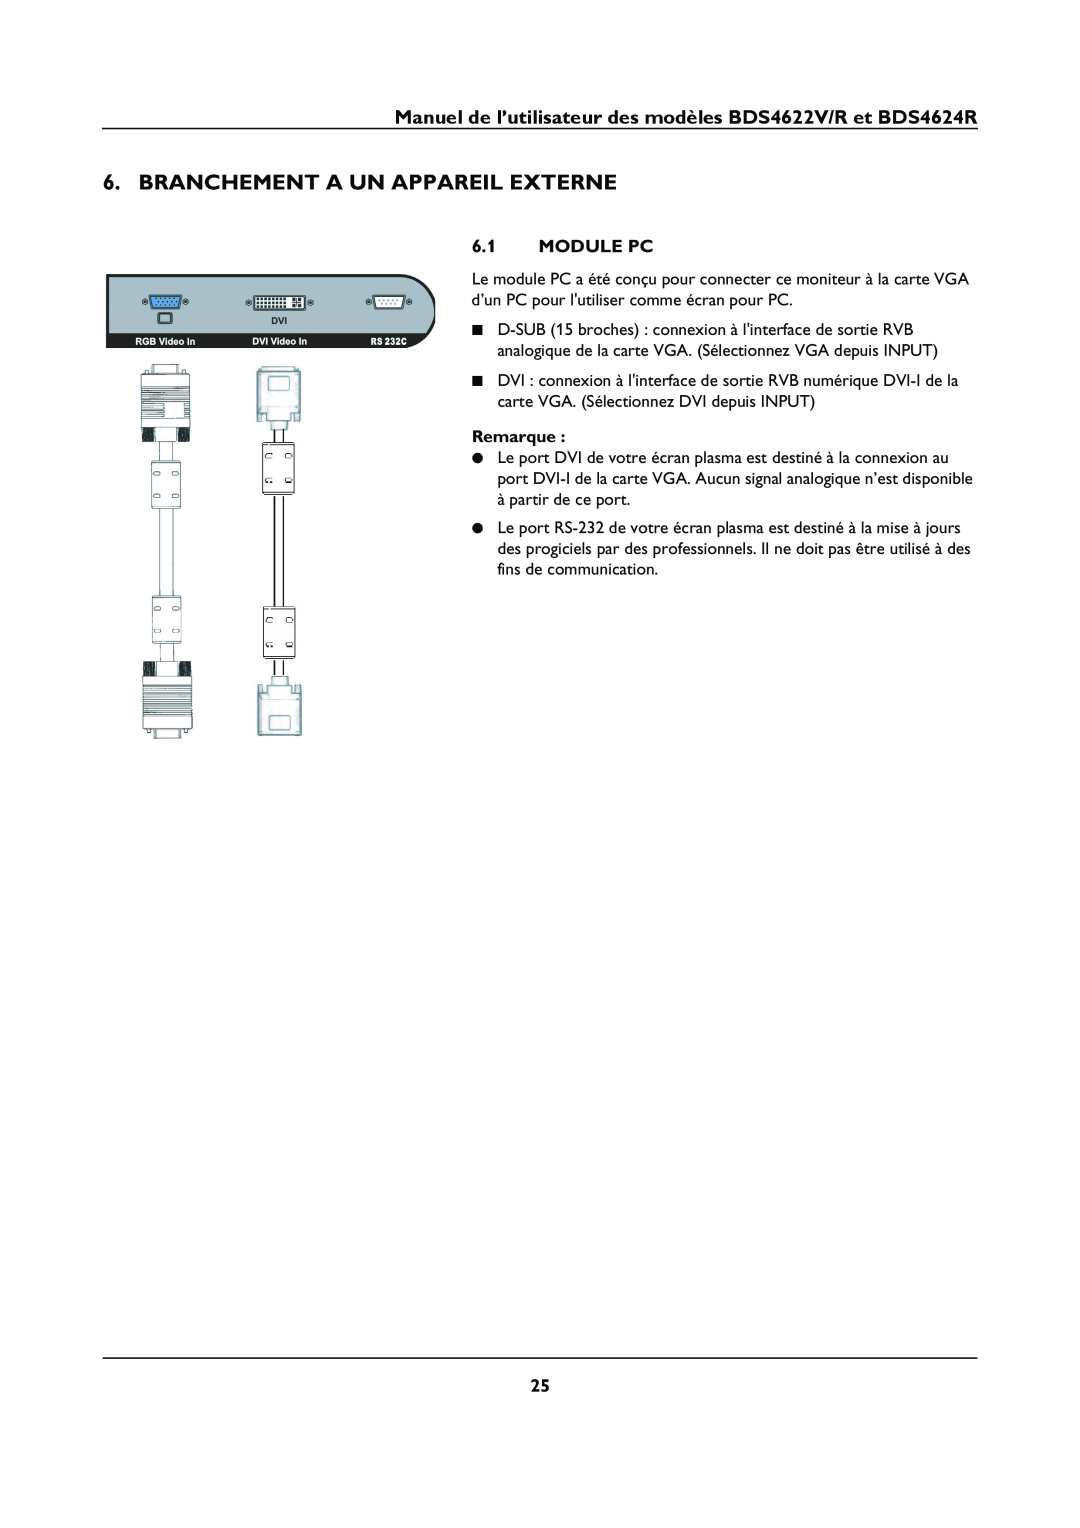 Philips manual Branchement A Un Appareil Externe, Module Pc, Manuel de l’utilisateur des modèles BDS4622V/R et BDS4624R 